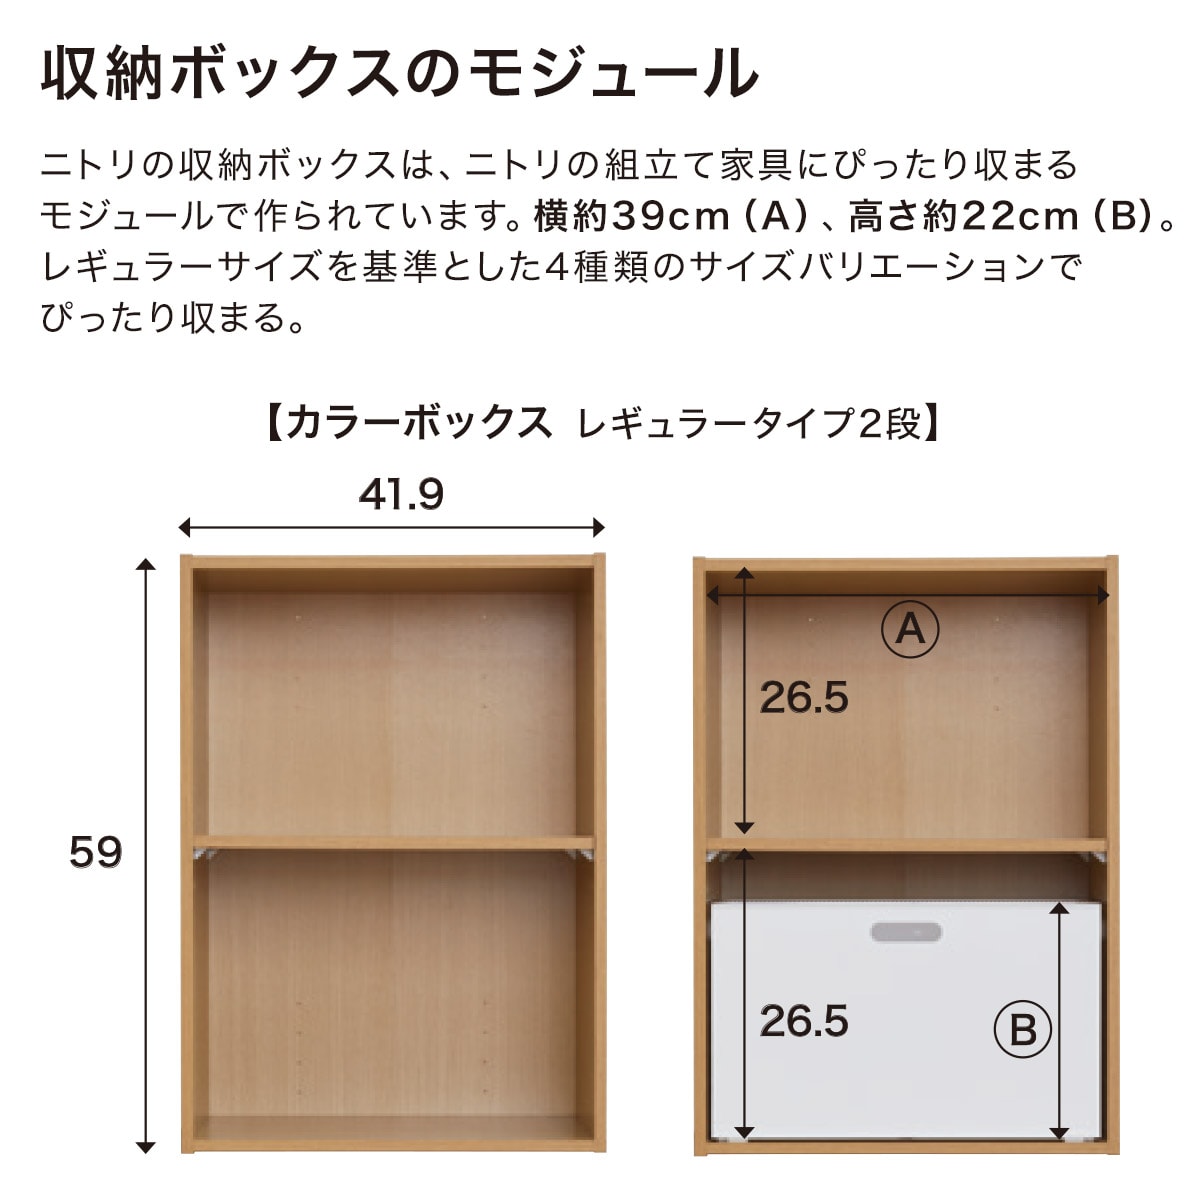 バスケット Nインボックス(W) レギュラー通販 ニトリネット【公式】 家具・インテリア通販